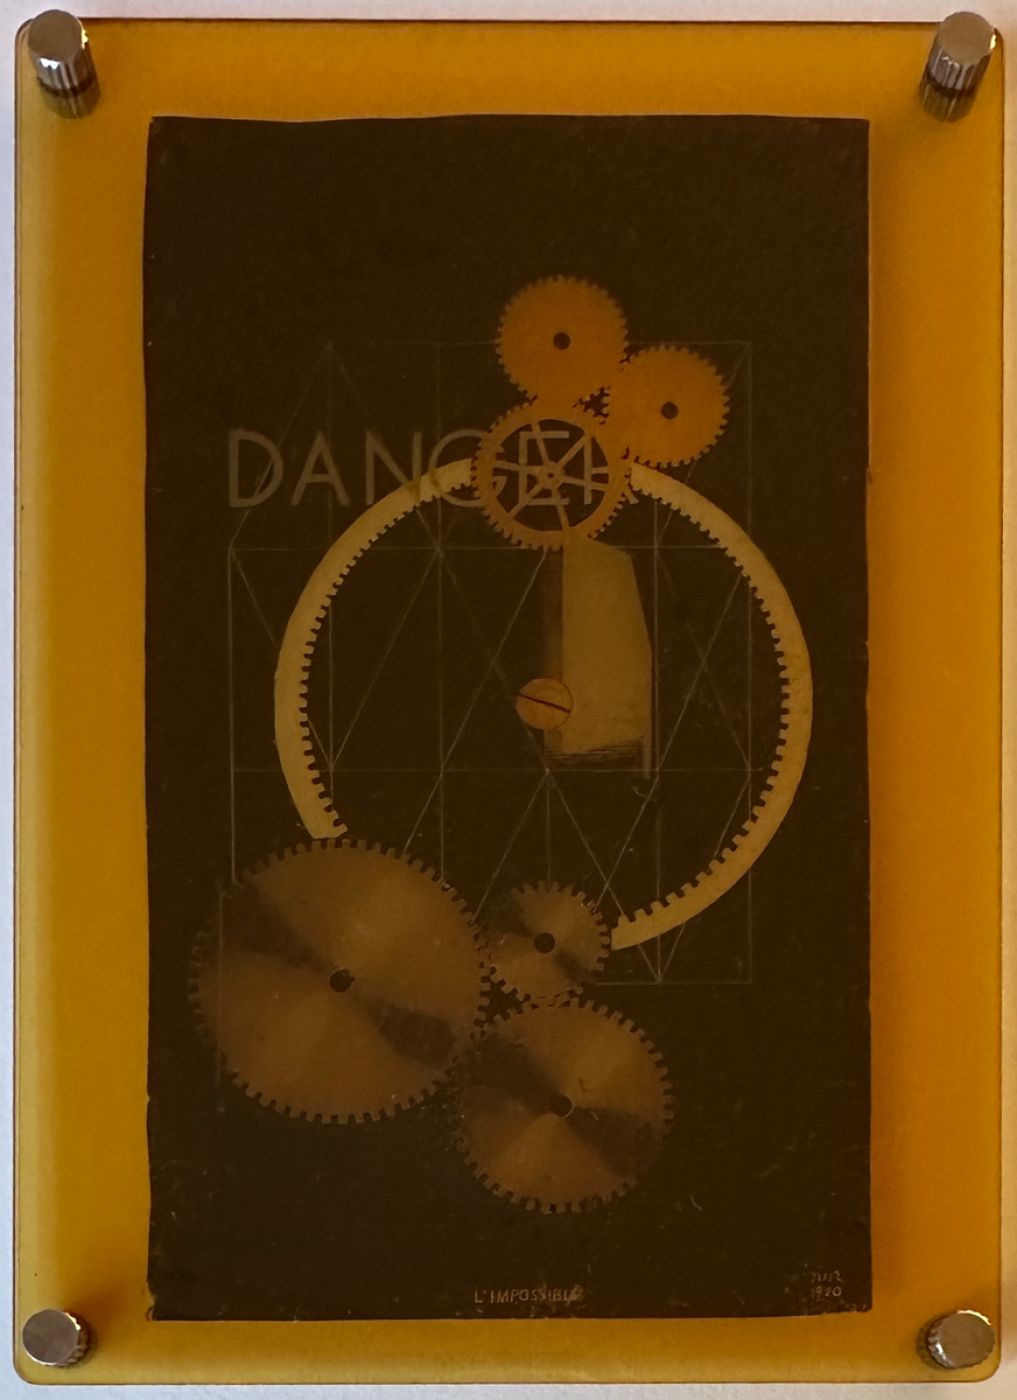 Man Ray, “Danger/Dancer”, 1920